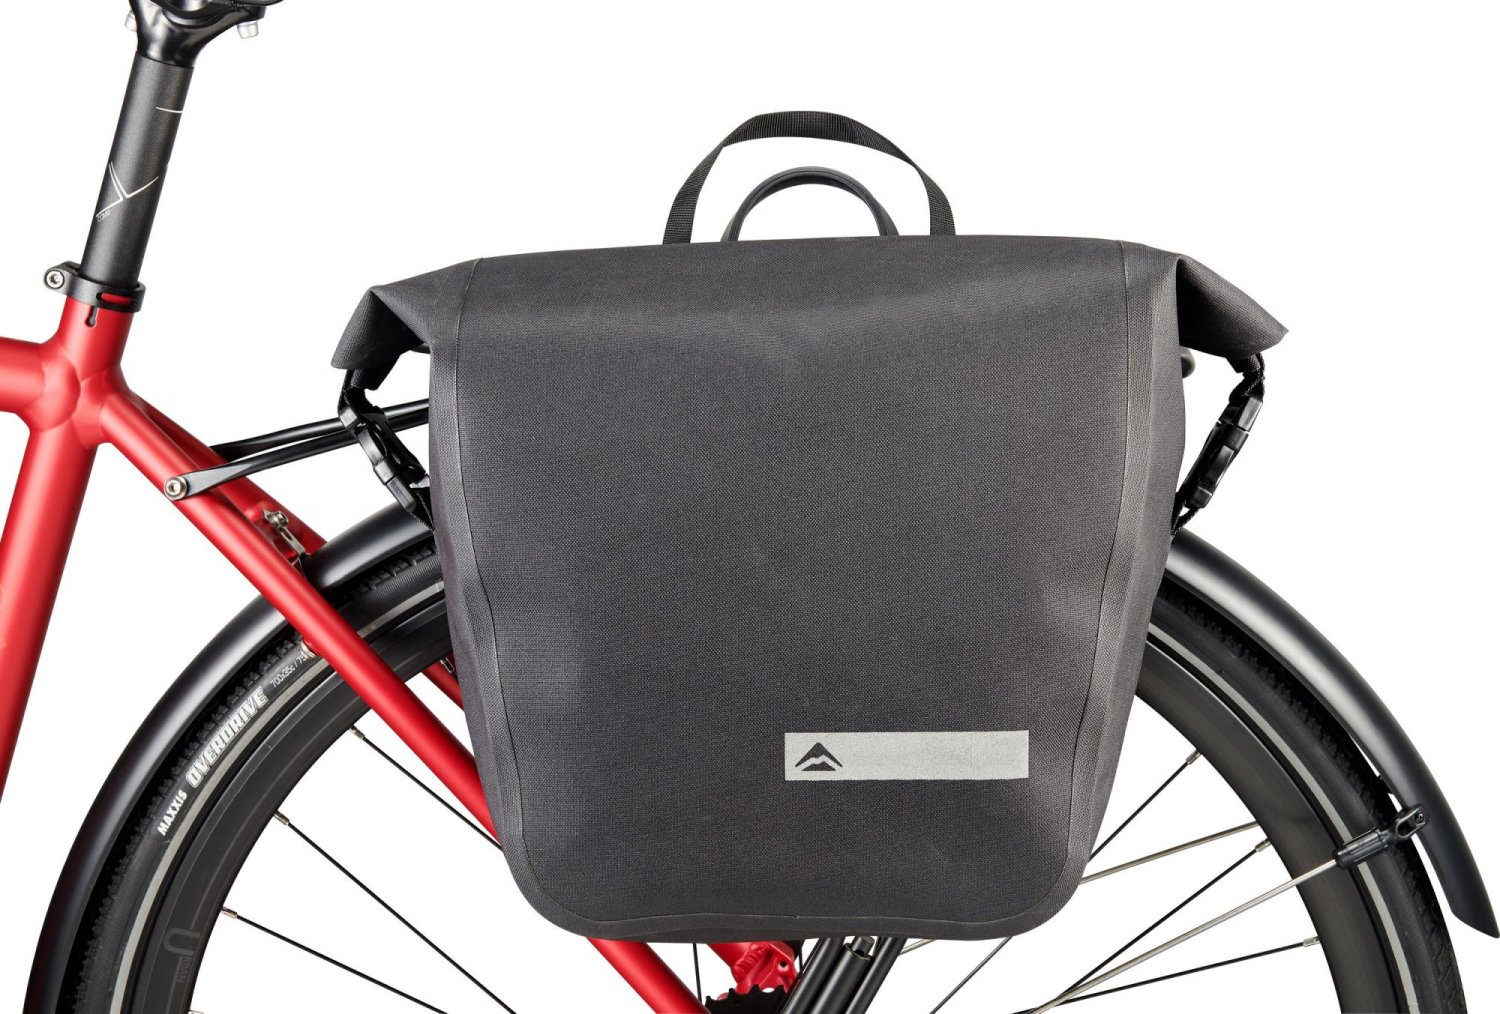 Сумка велосипедная Merida Pannier Bag, 10L, 30*30*15 см, на багажник, Black/Grey, 2276004596 сумка велосипедная bianchi trunk bag s на багажник 5 л c9450163